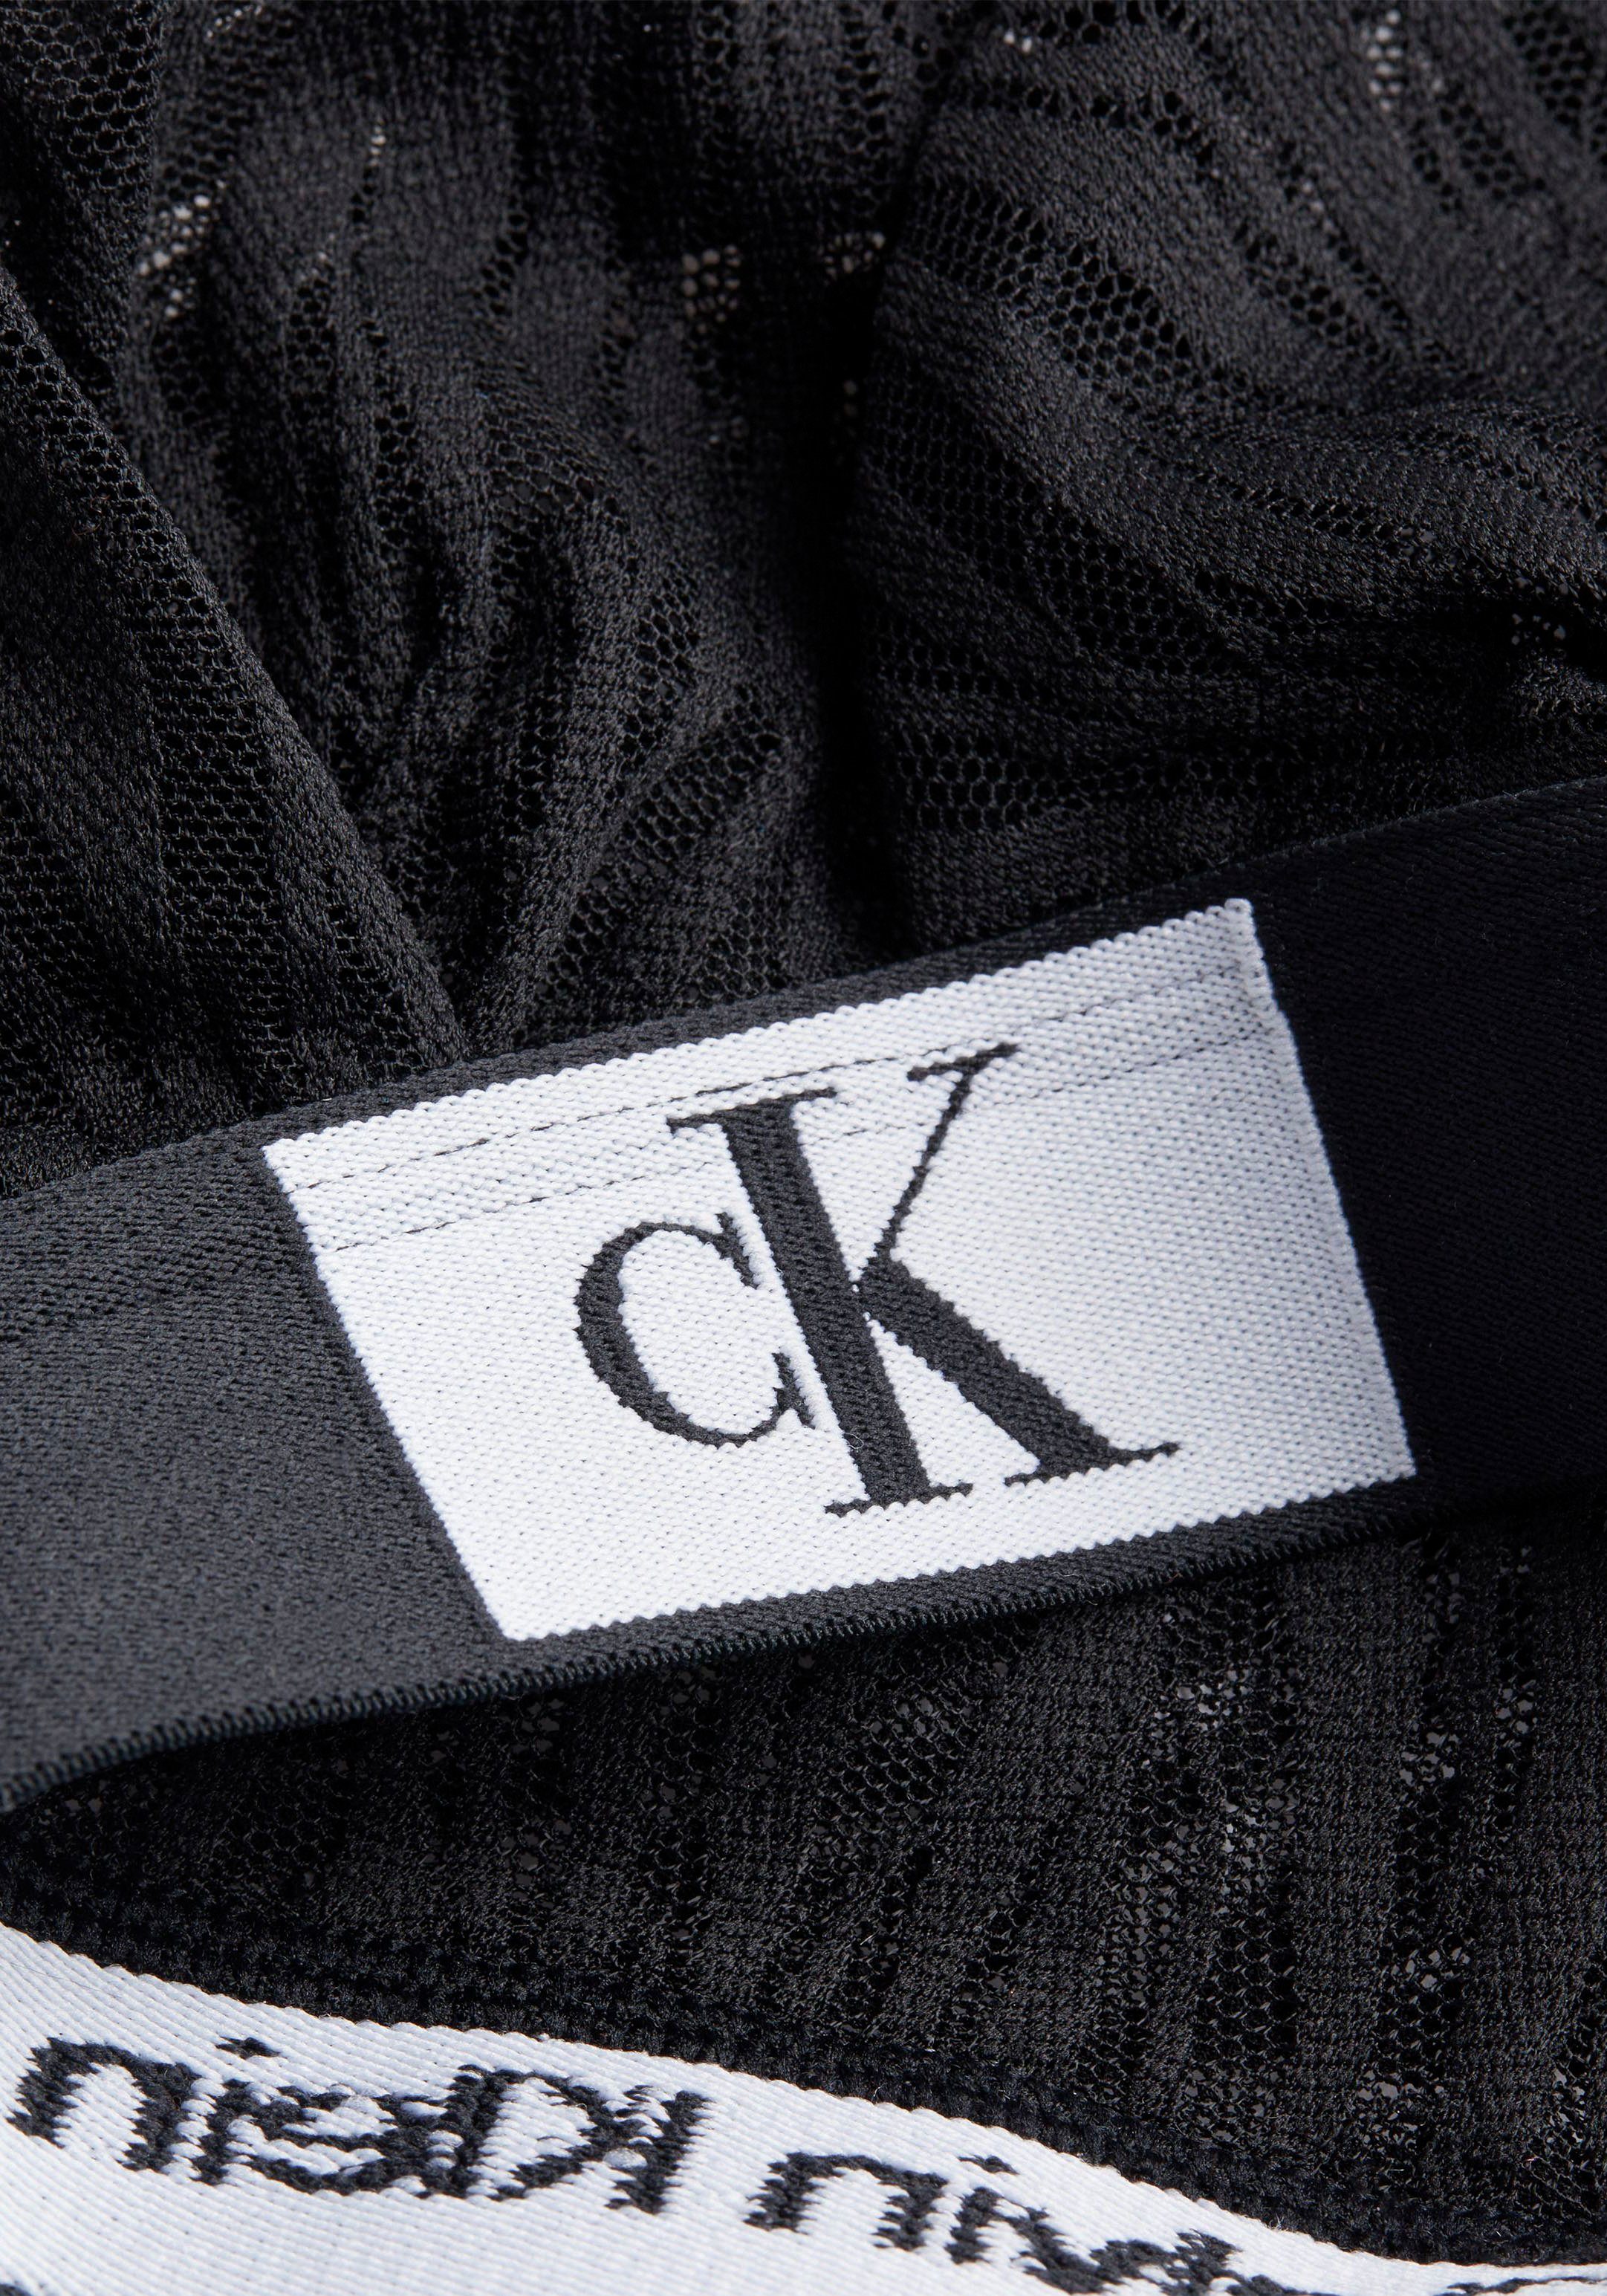 Calvin Klein Underwear mit schwarz sportlichem Triangel-BH Elastikbund